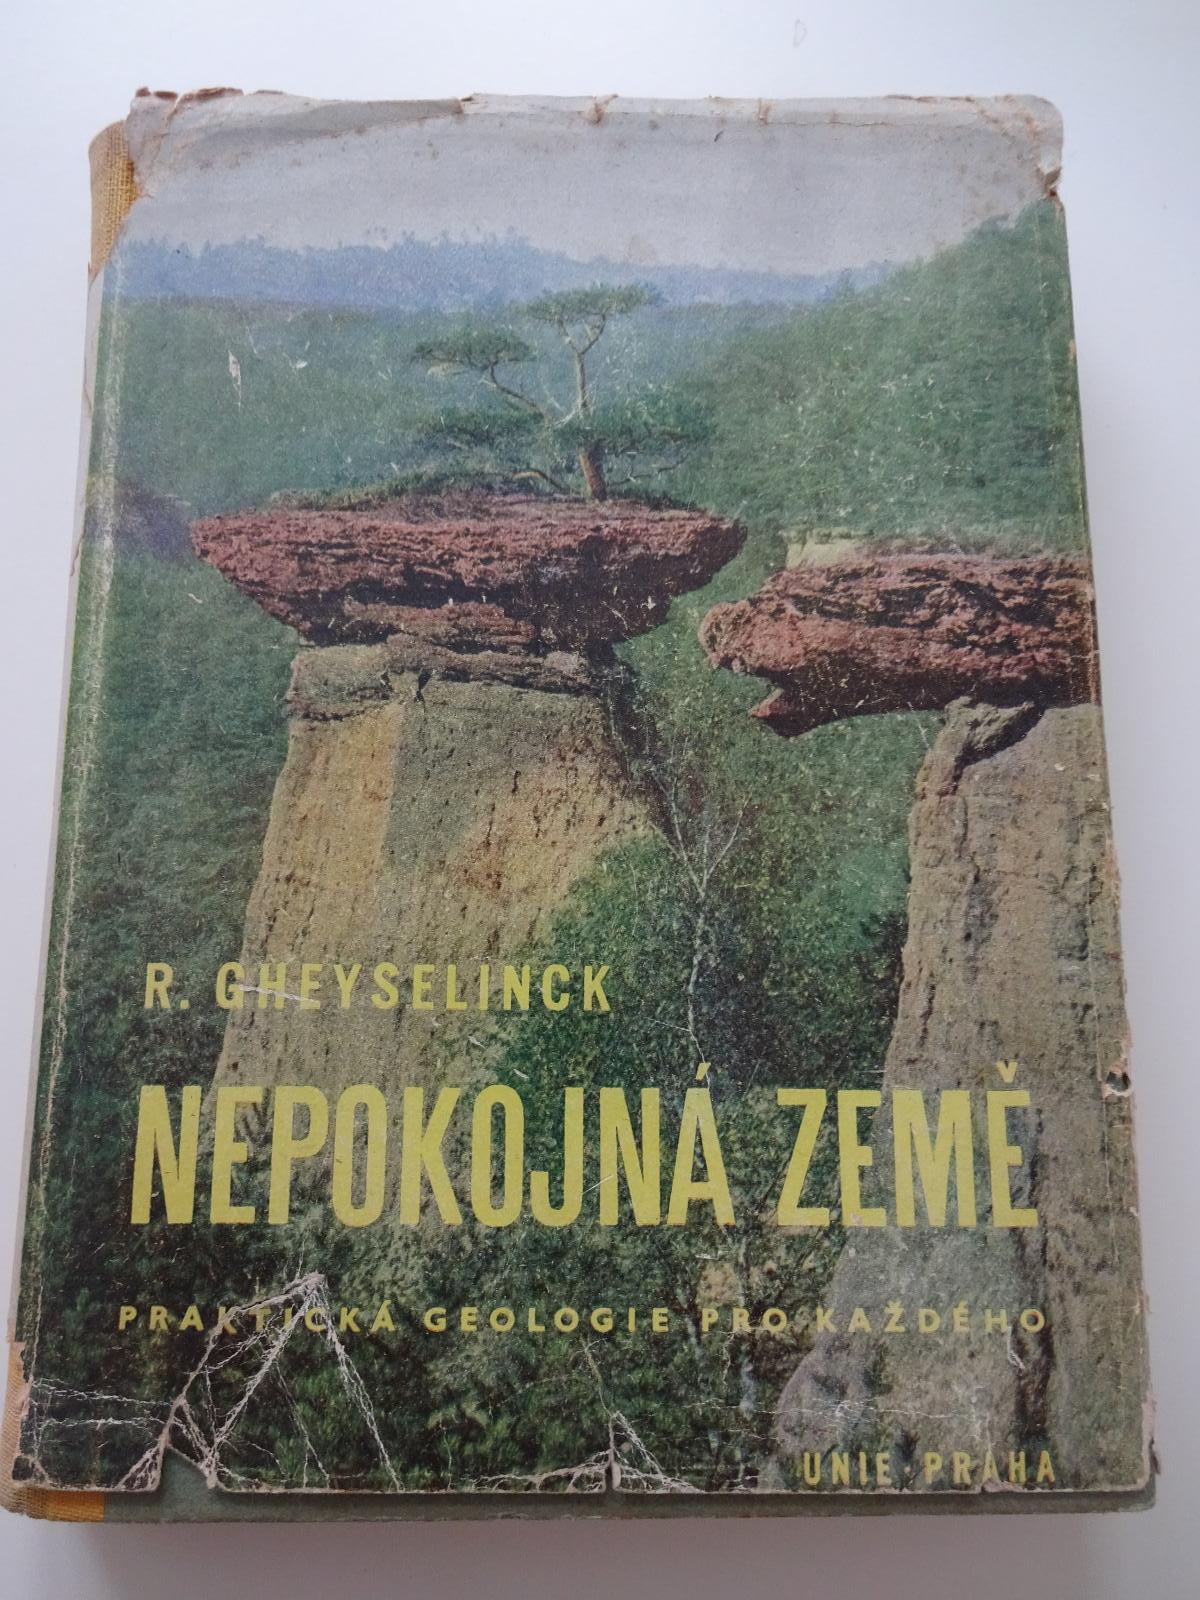 Nepokojná země - Praktická geologie pro každého - R.Gheyselinck - 1945 - Knihy